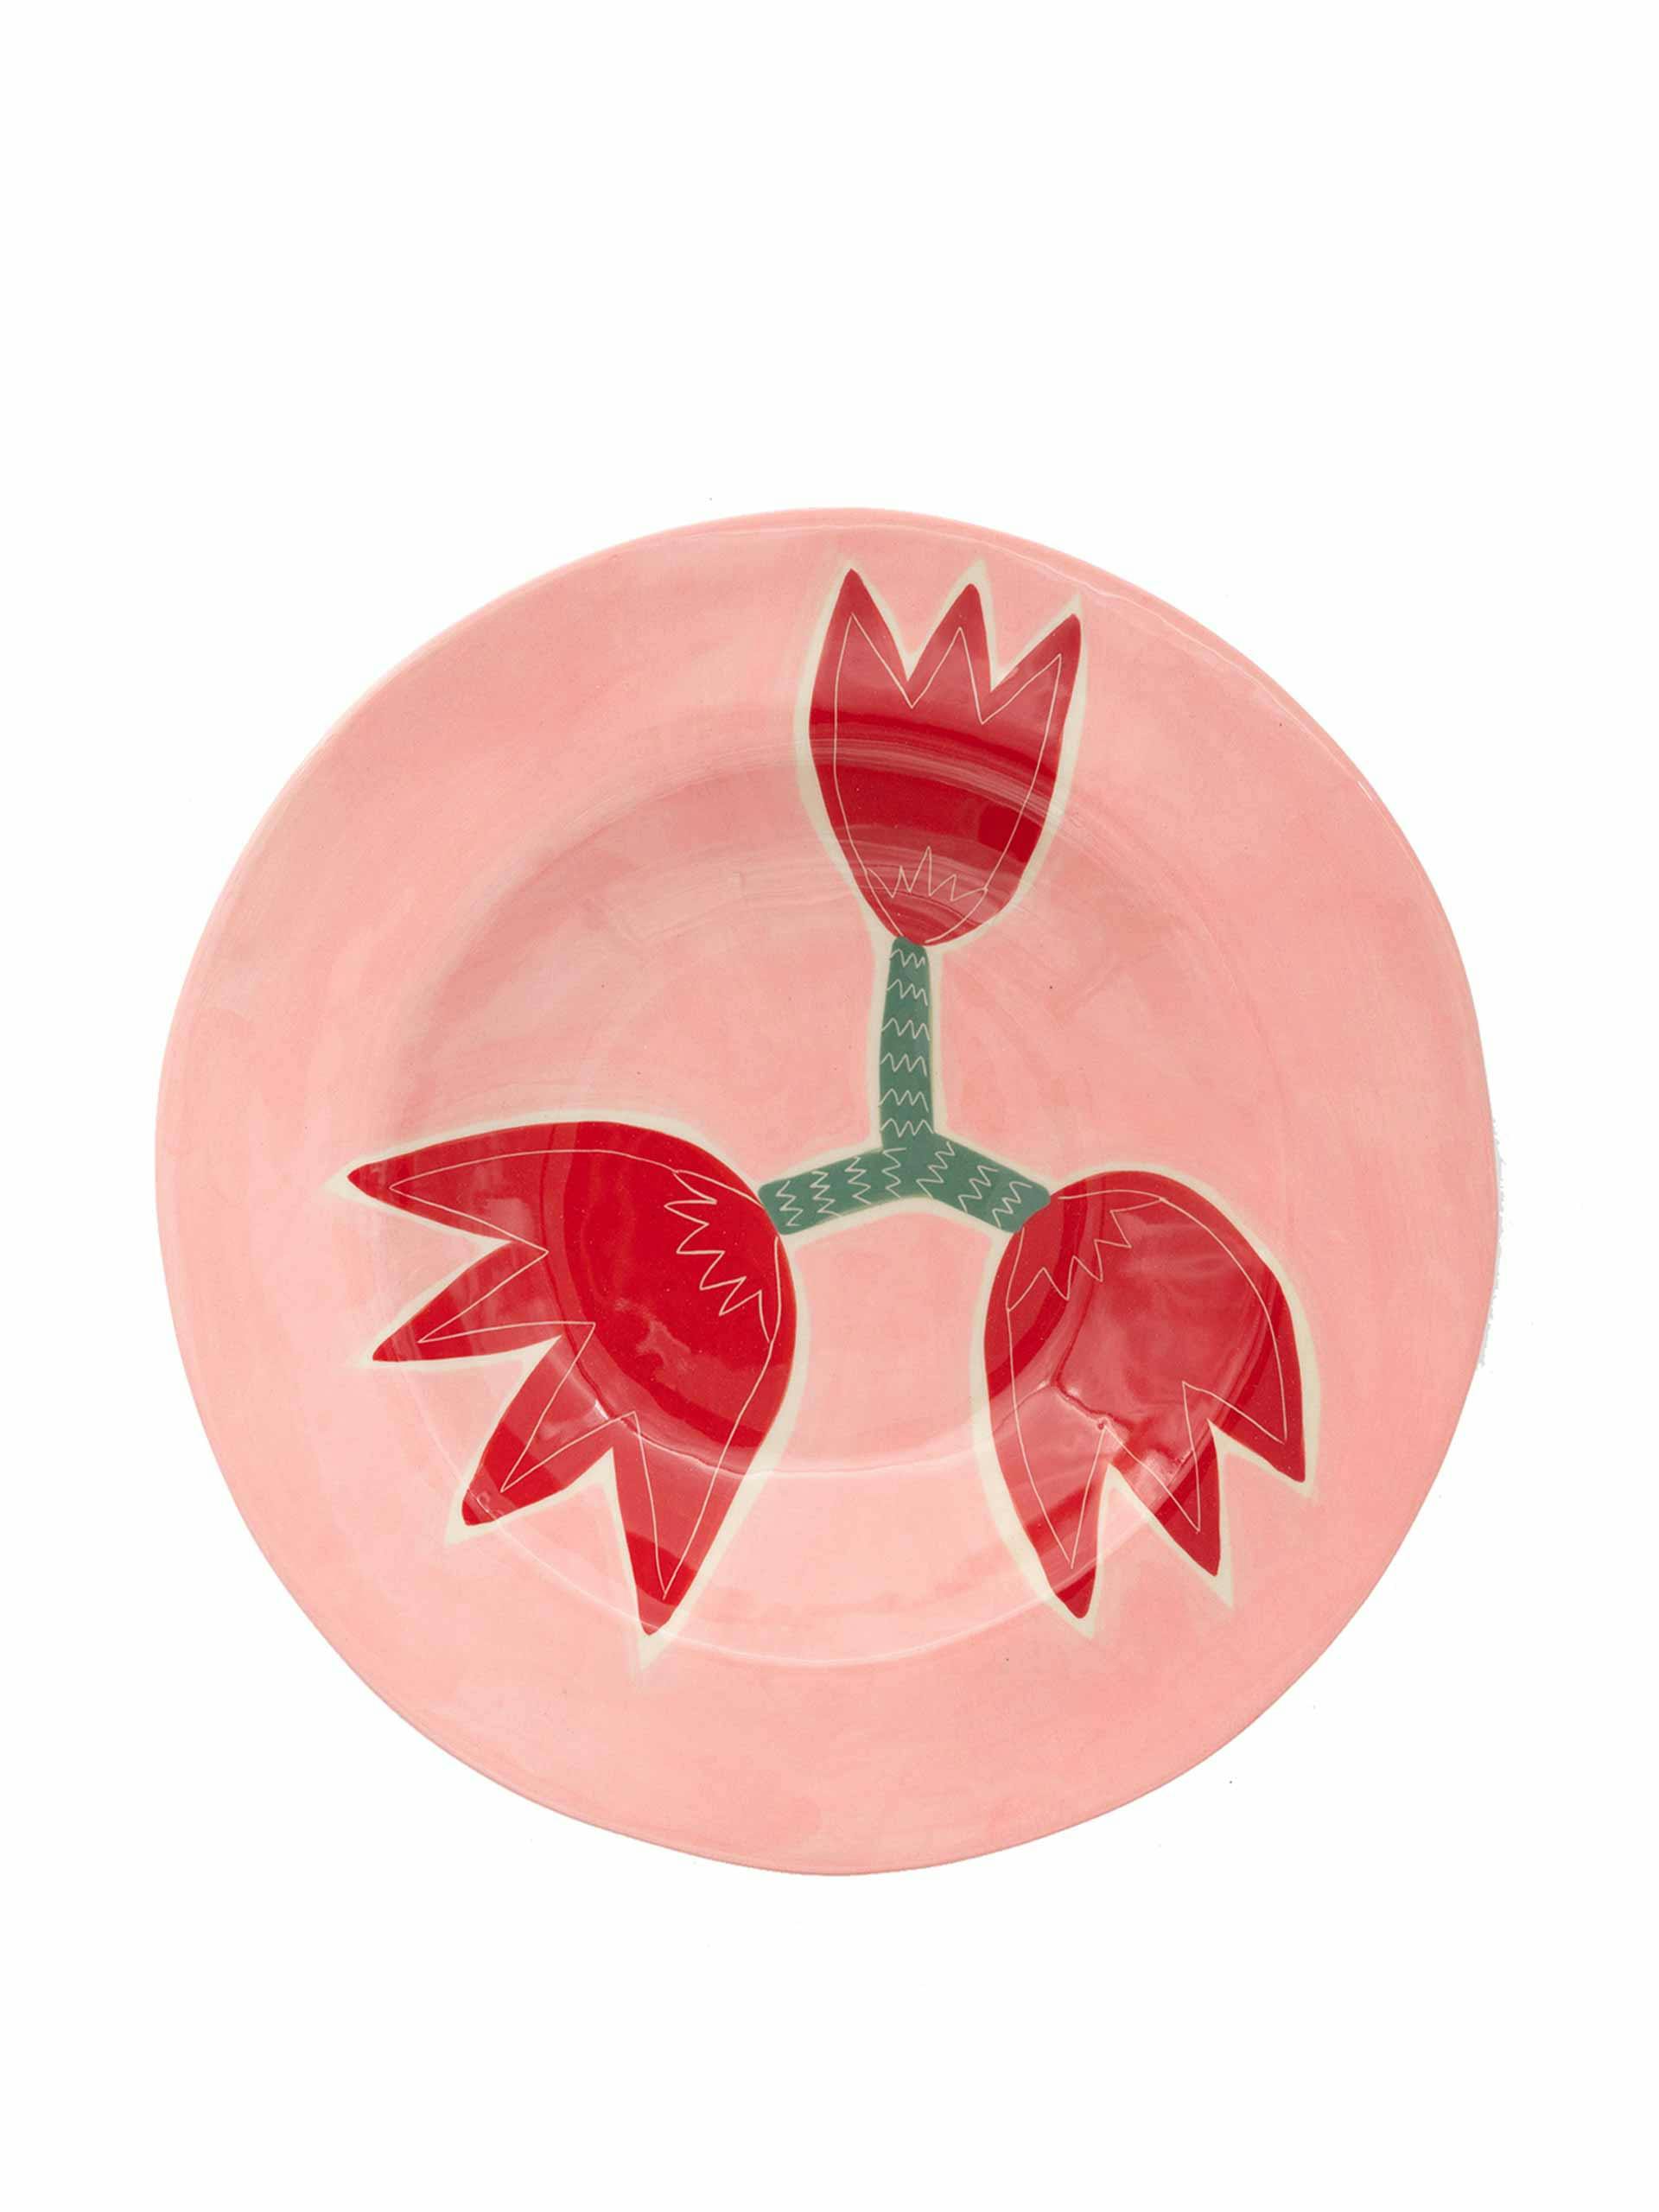 Hand-painted ceramic Tulip plate